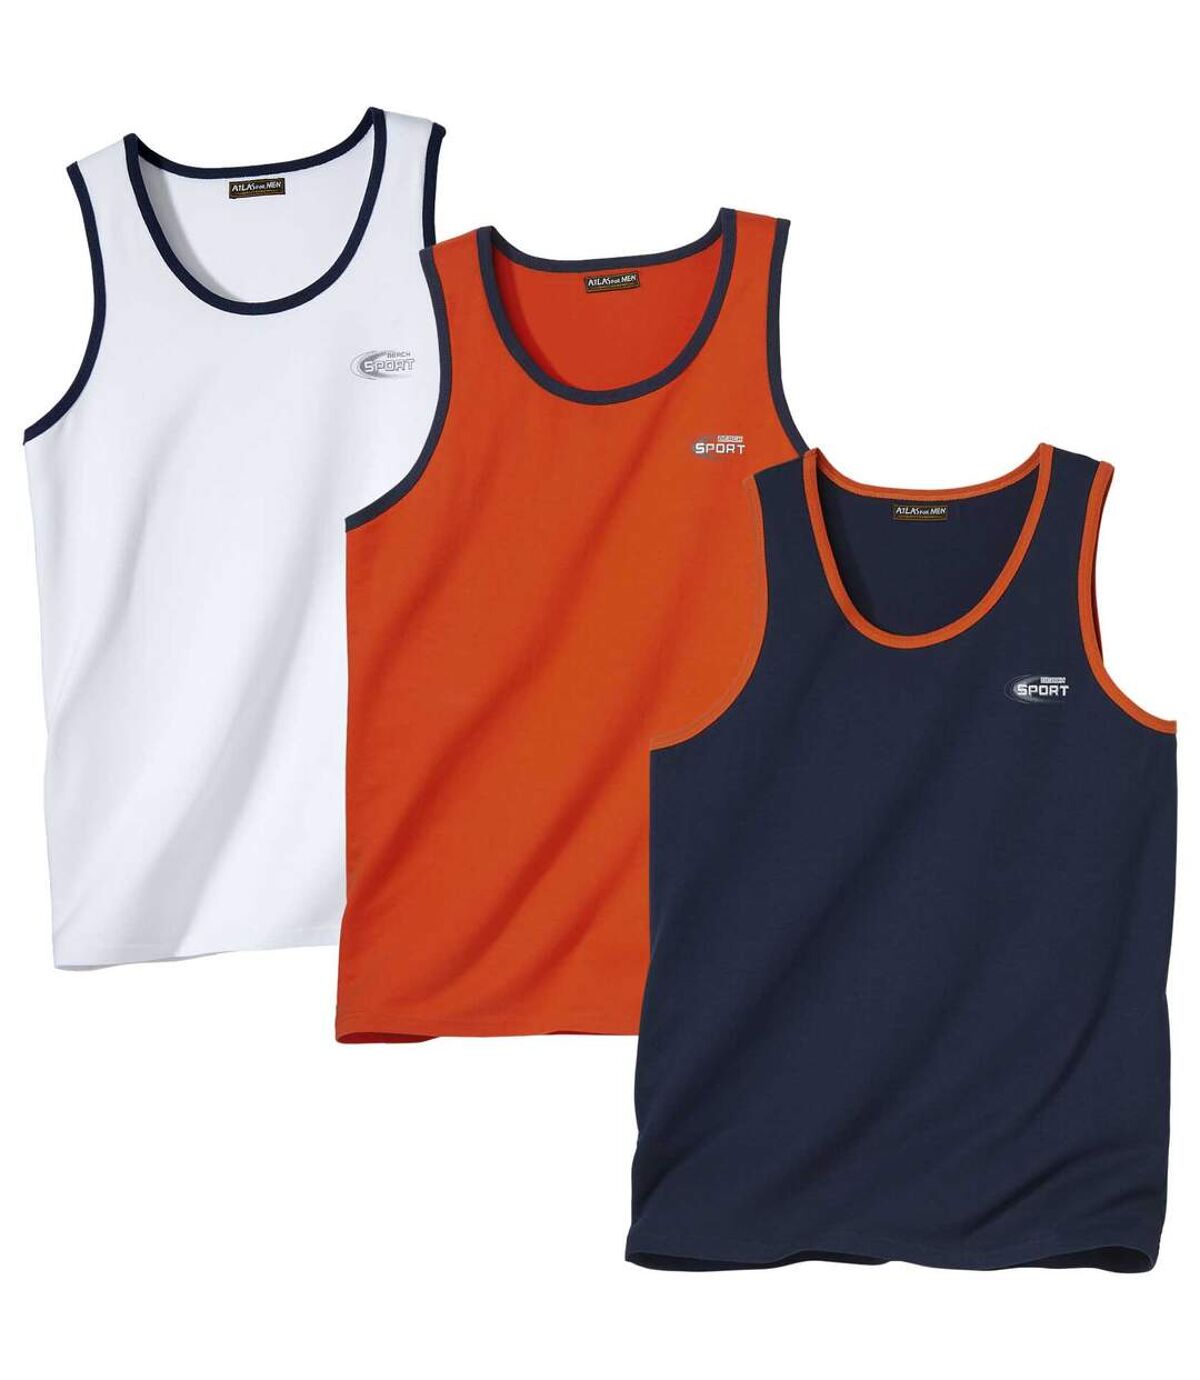 Pack of 3 Men's Sports Tank Tops - White, Orange, Navy Atlas For Men